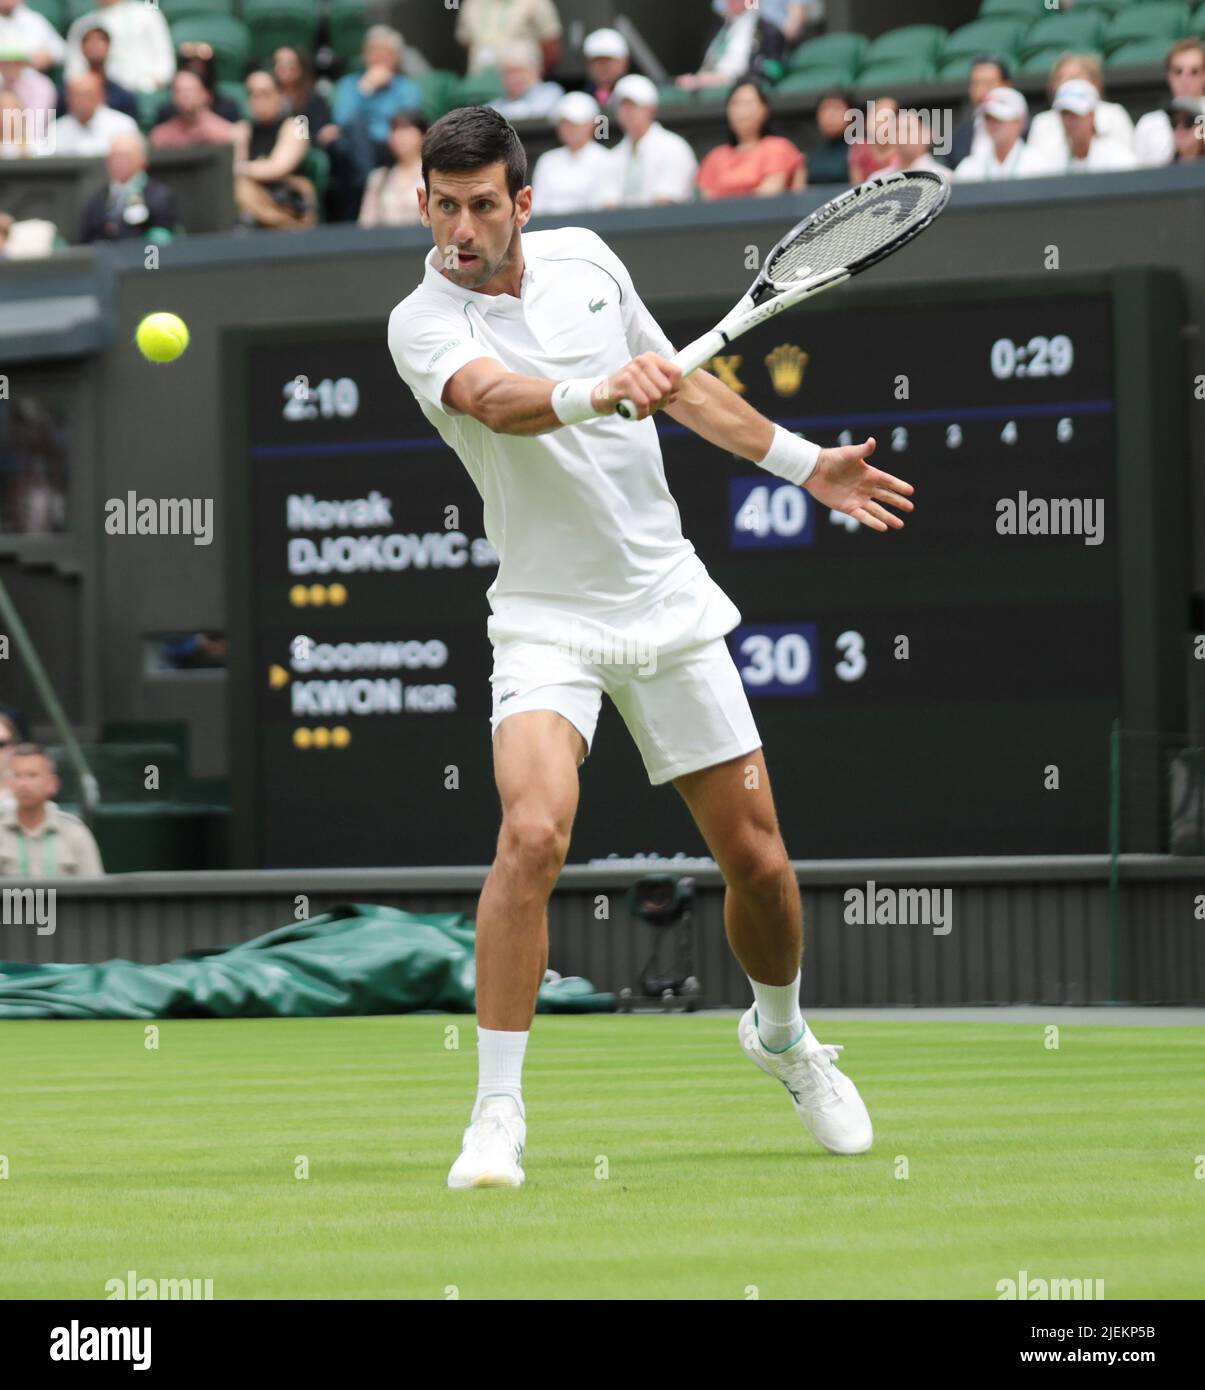 Londra, Regno Unito. 27th giugno 2022. Il serbo Novak Djokovic gioca un backhand nella sua partita contro il coreano Soonwoo Kwon nel primo round dei campionati Wimbledon 2022 a Londra il 27 giugno 2022. Foto di Hugo Philpott/UPI Credit: UPI/Alamy Live News Foto Stock